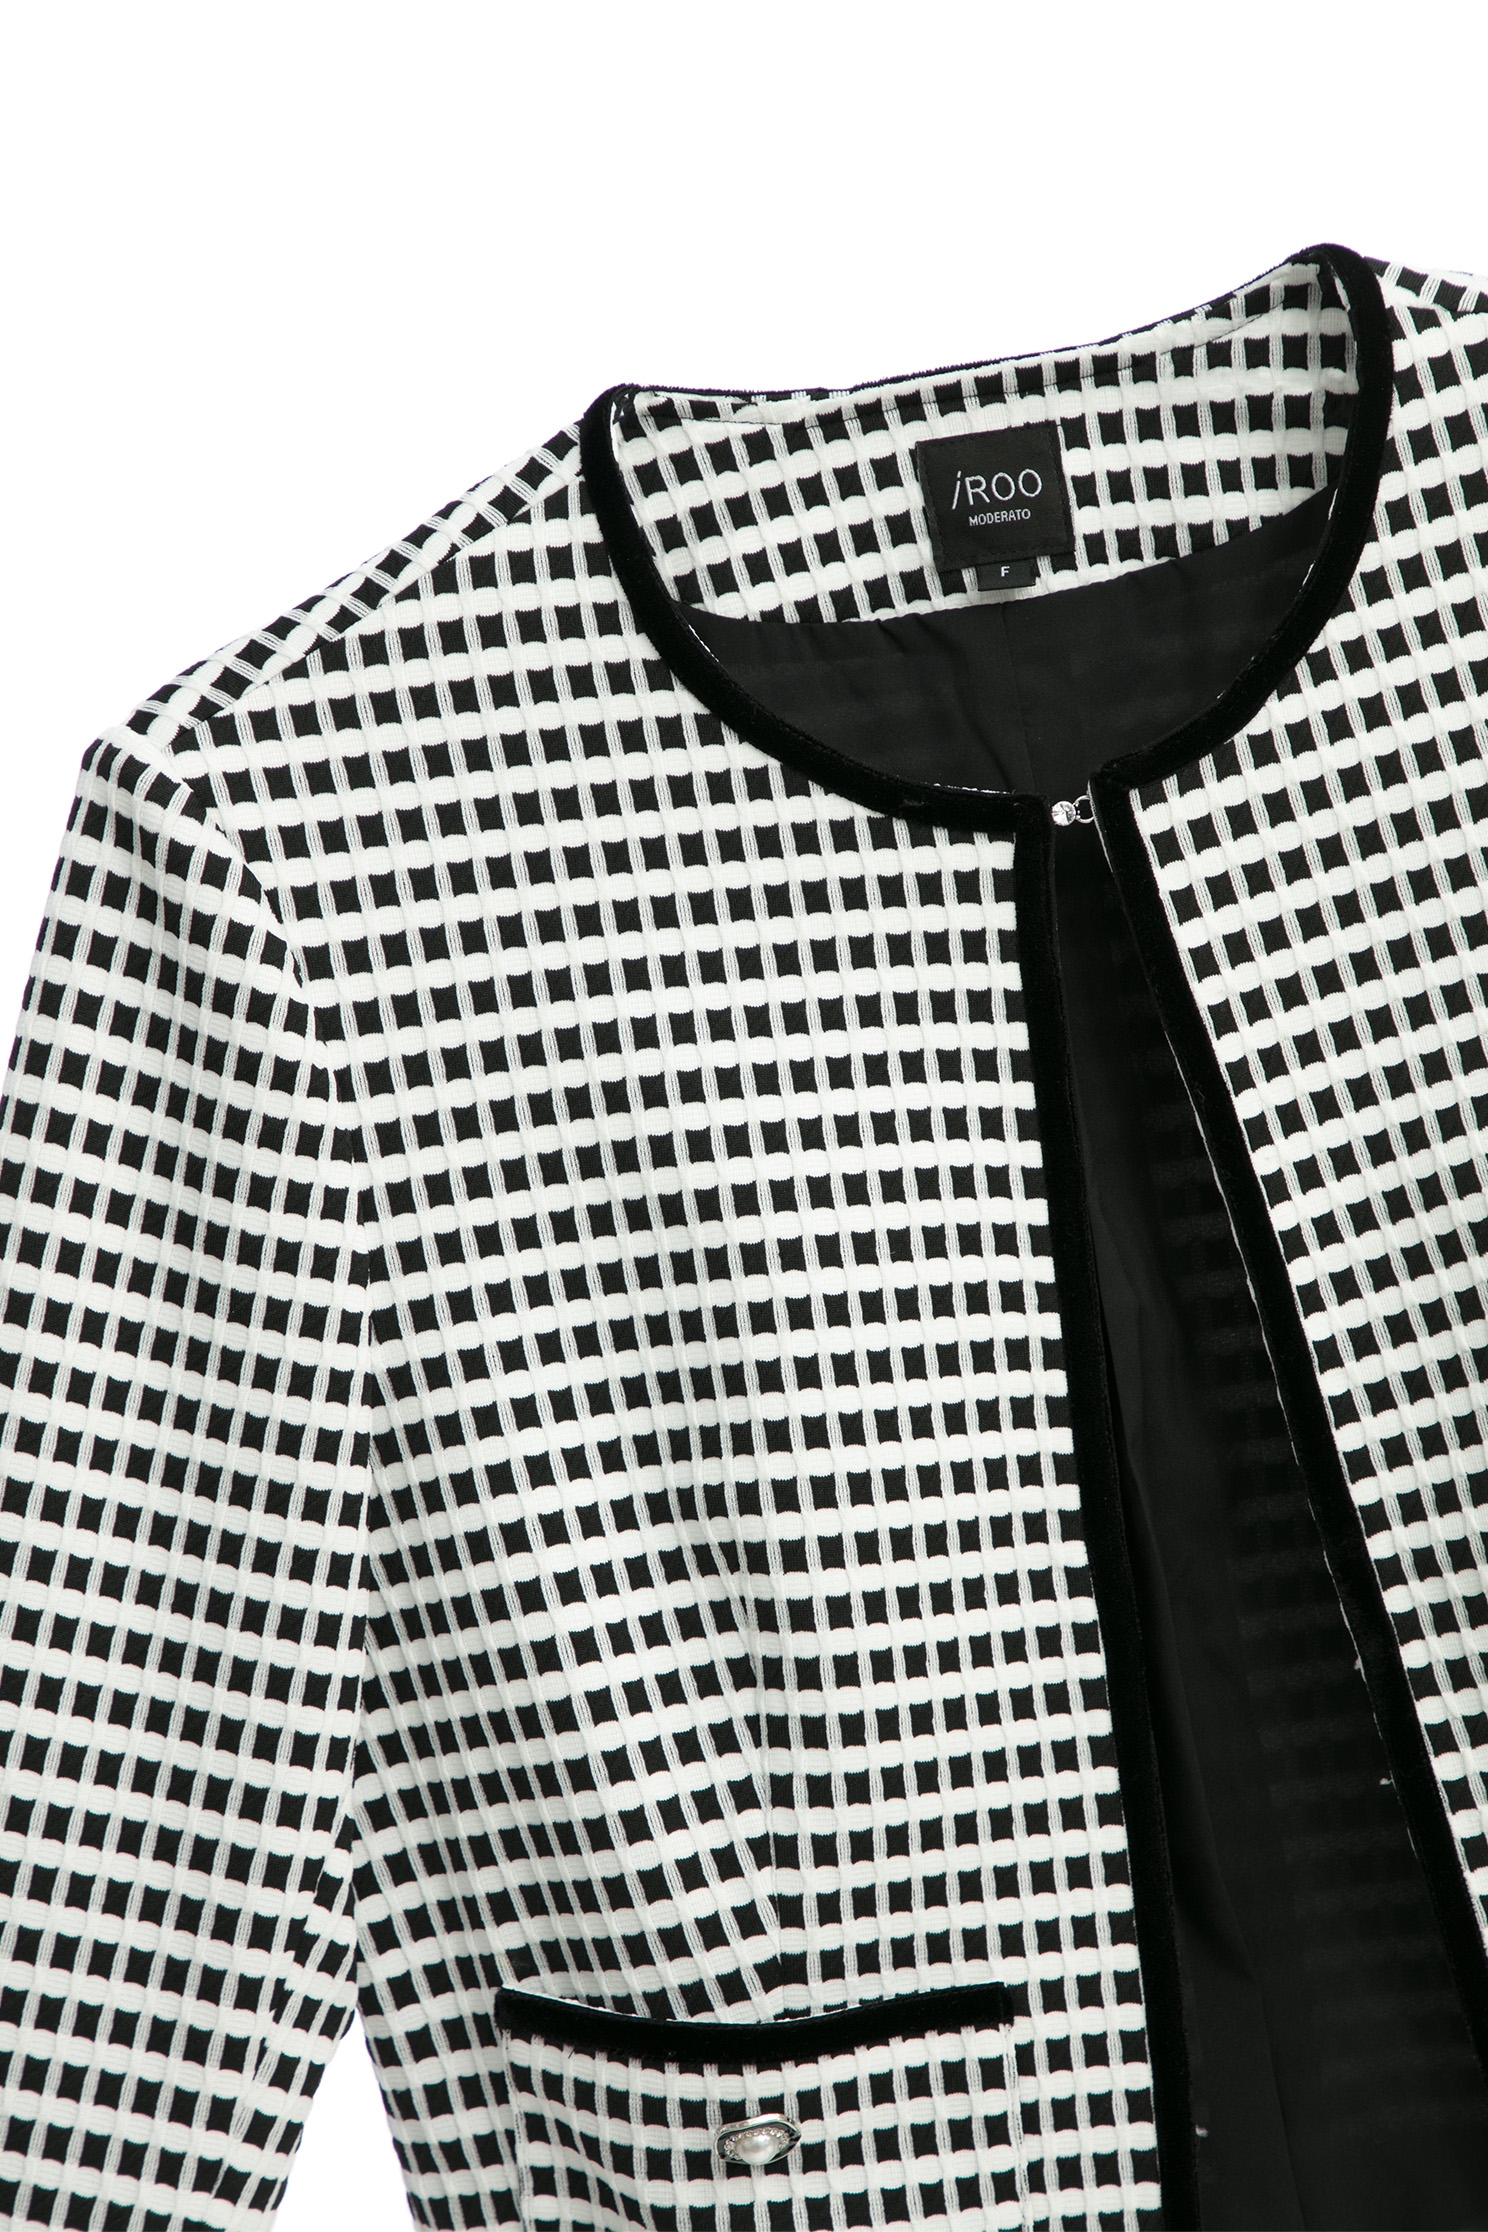 經典黑白格立體彈性短外套經典黑白格立體彈性短外套,一般外套,人氣商品,外套,春夏穿搭,珍珠,針織